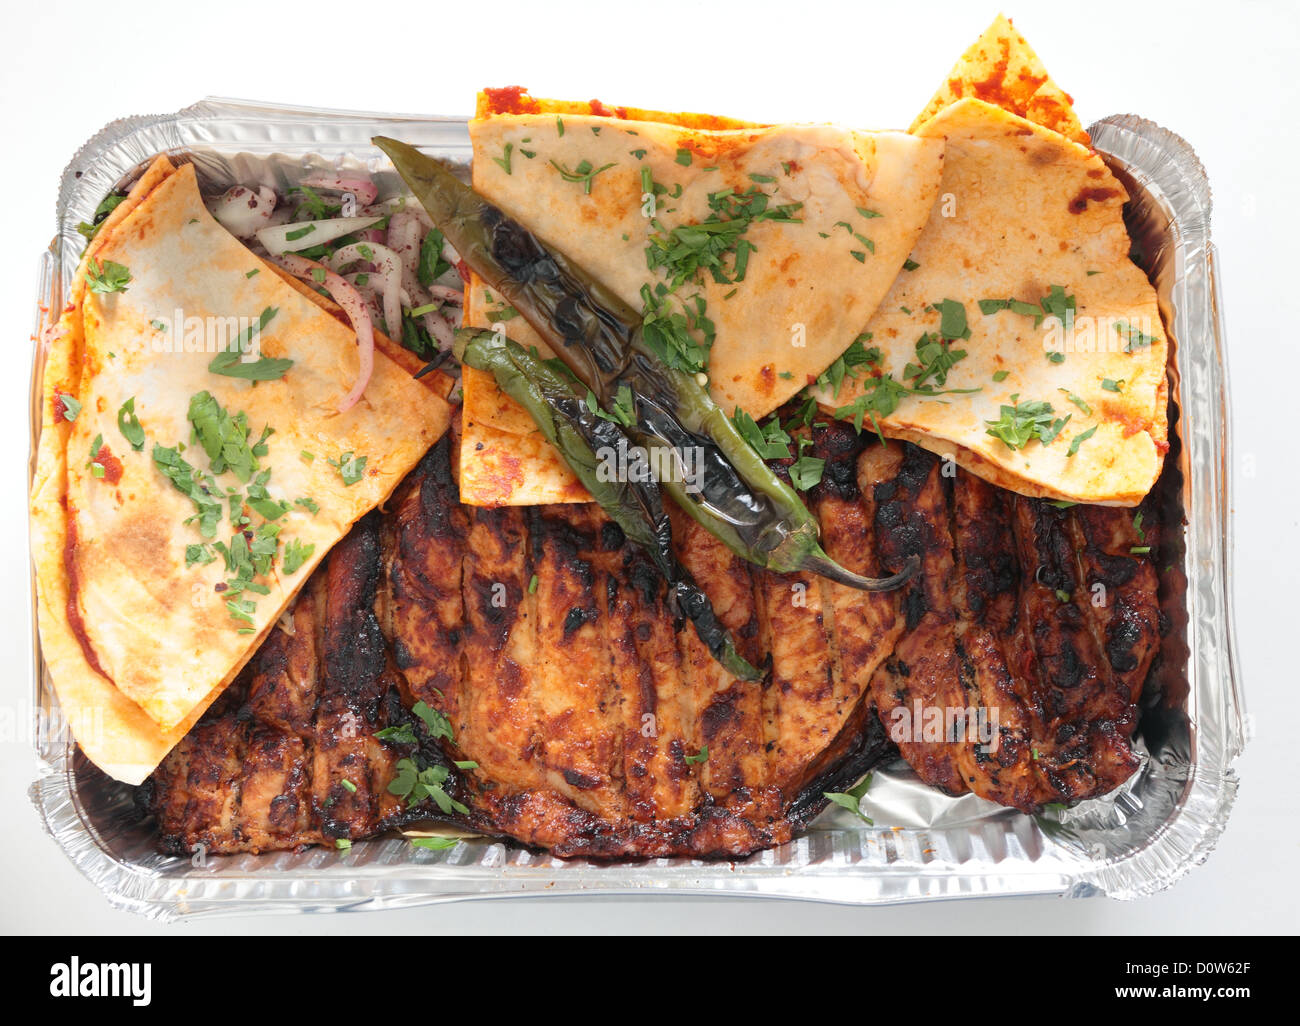 Un ristorante vassoio del bagno turco o arabo spatchcocked, marinaded pollo alla brace, servita con piatto pane arabo Foto Stock